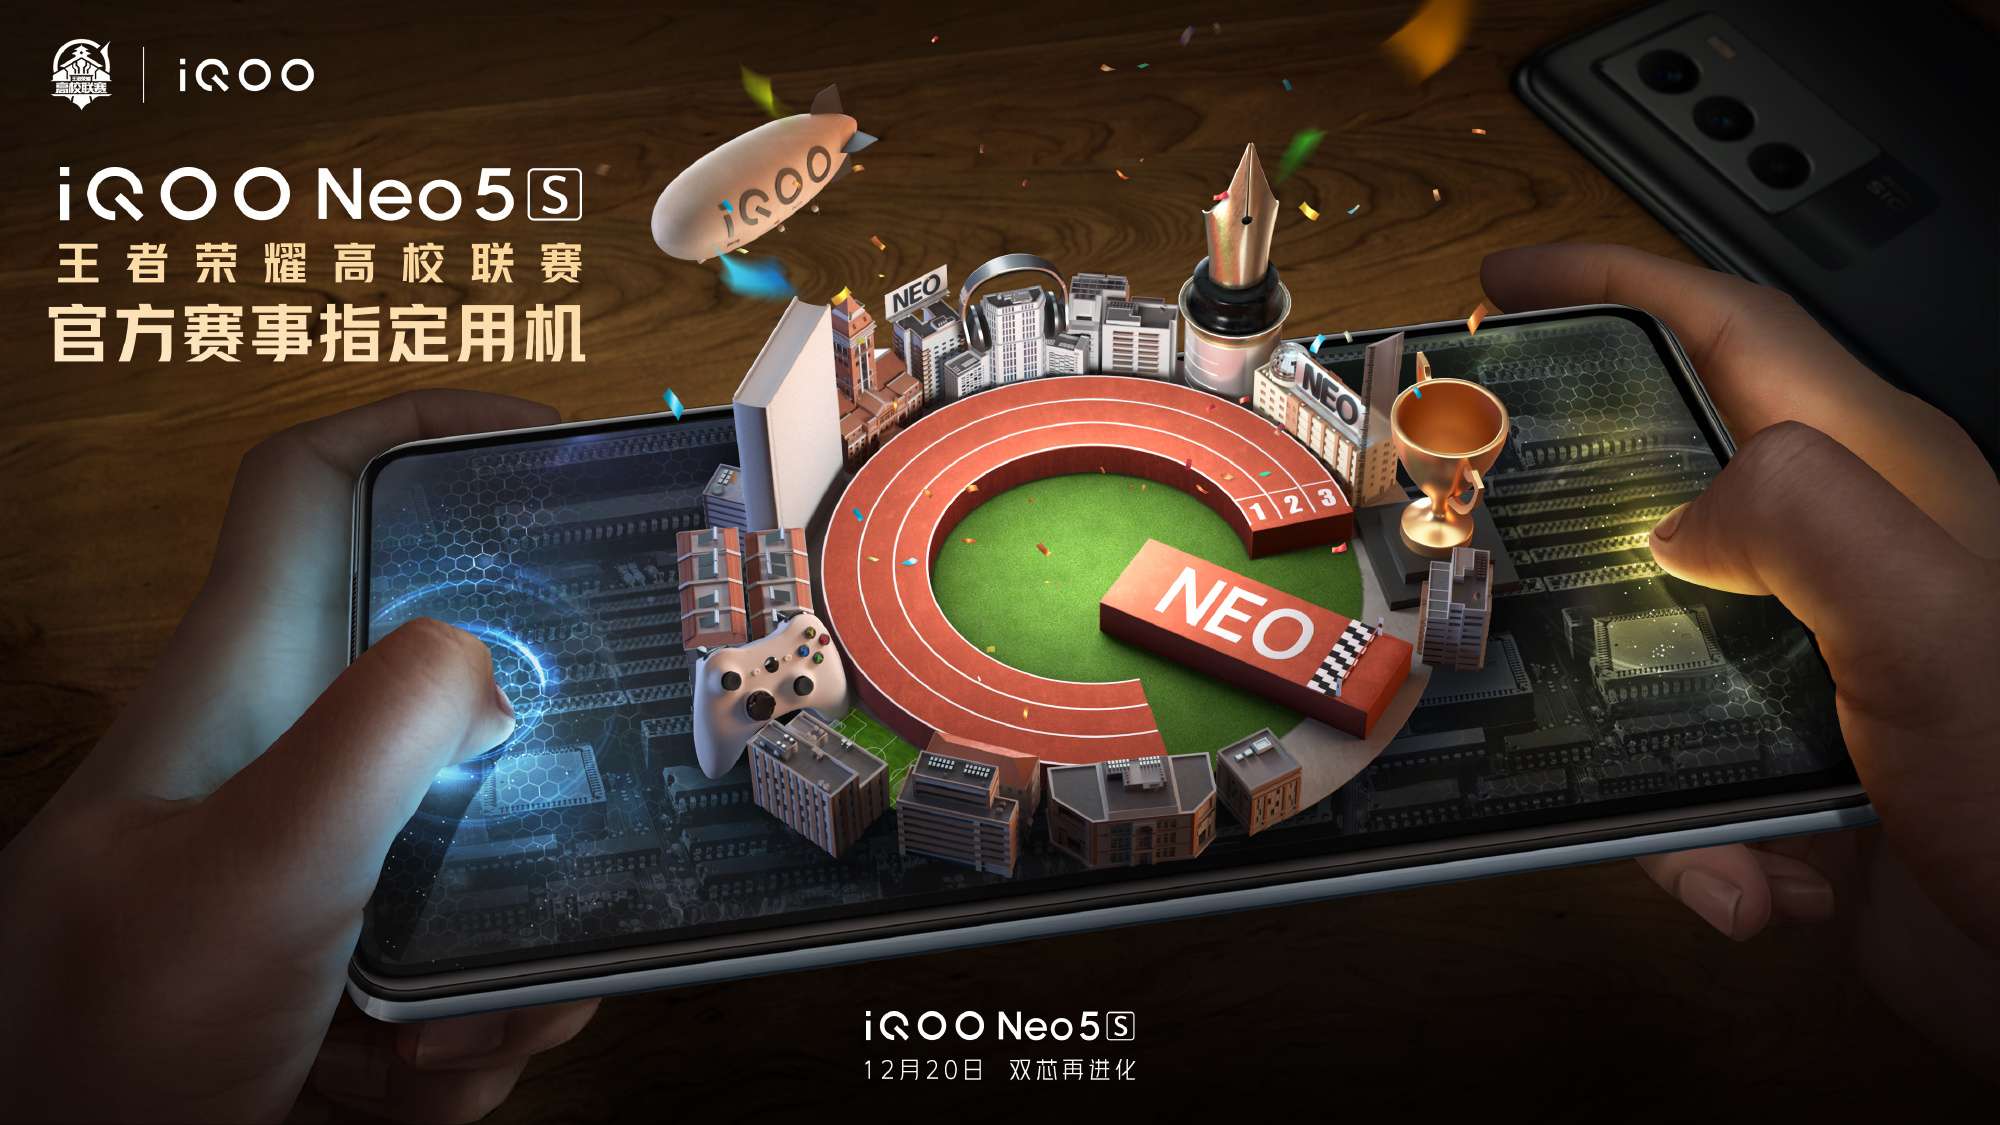 Oficjalnie: iQOO Neo 5s z ekranem AMOLED, chipem Snapdragon 888 i szybkim ładowaniem 66W zostaną zaprezentowane 20 grudnia